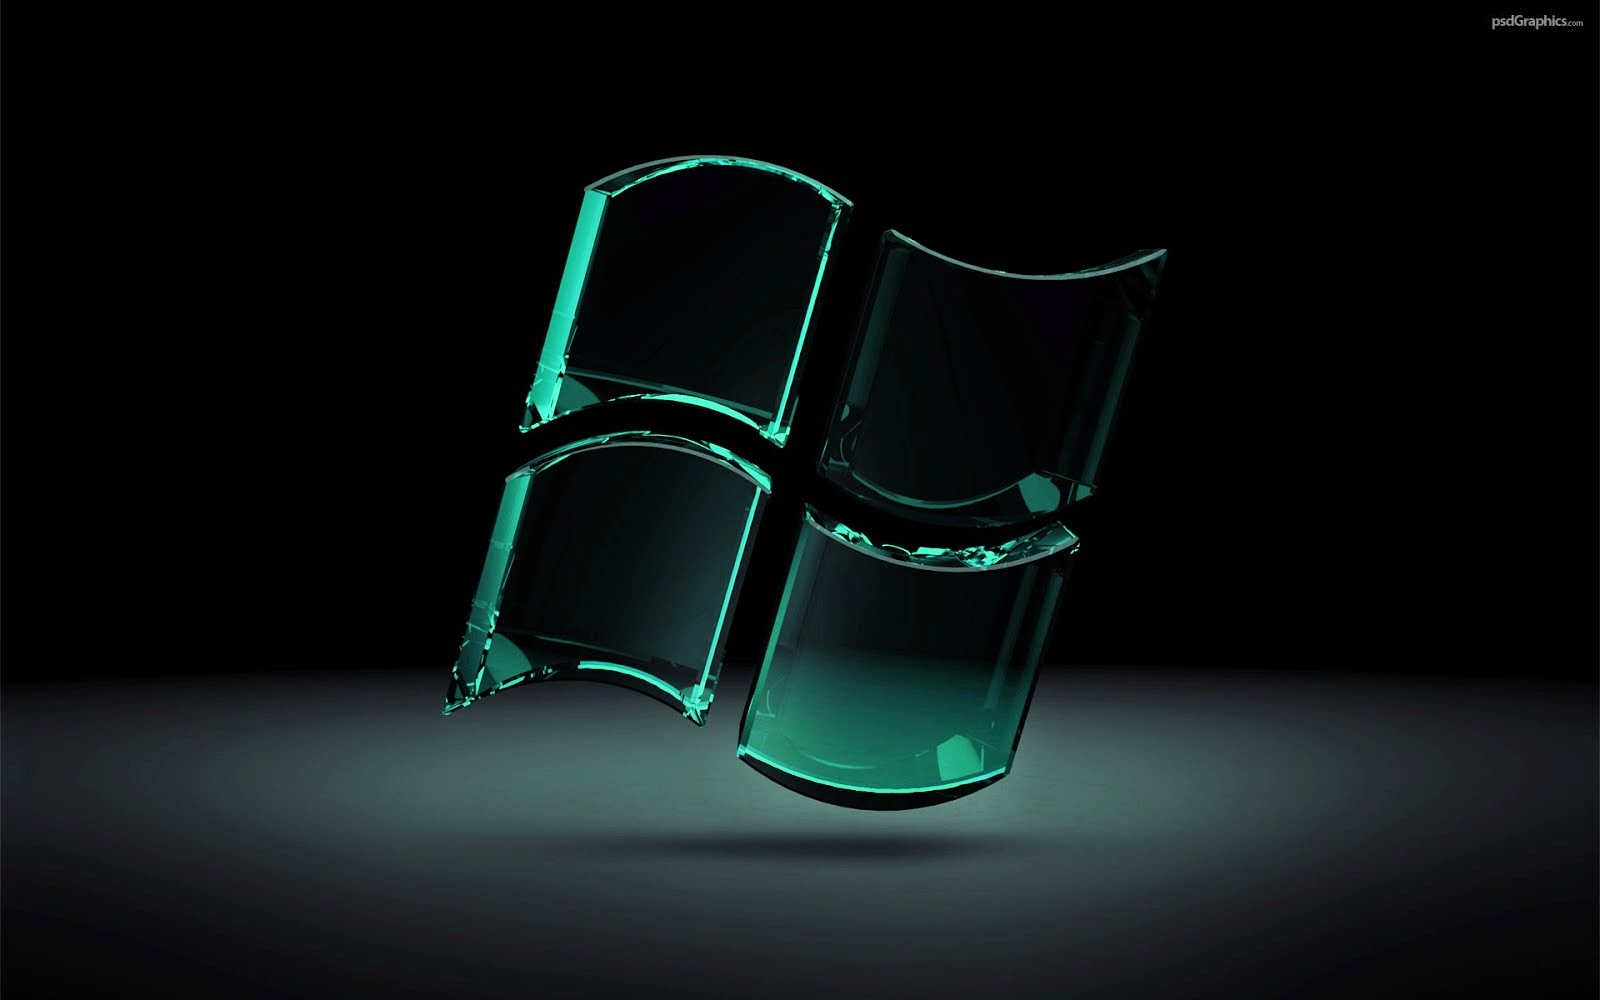 papier peint ordinateur portable keren,vert,matériau transparent,lumière,photographie de nature morte,chaise